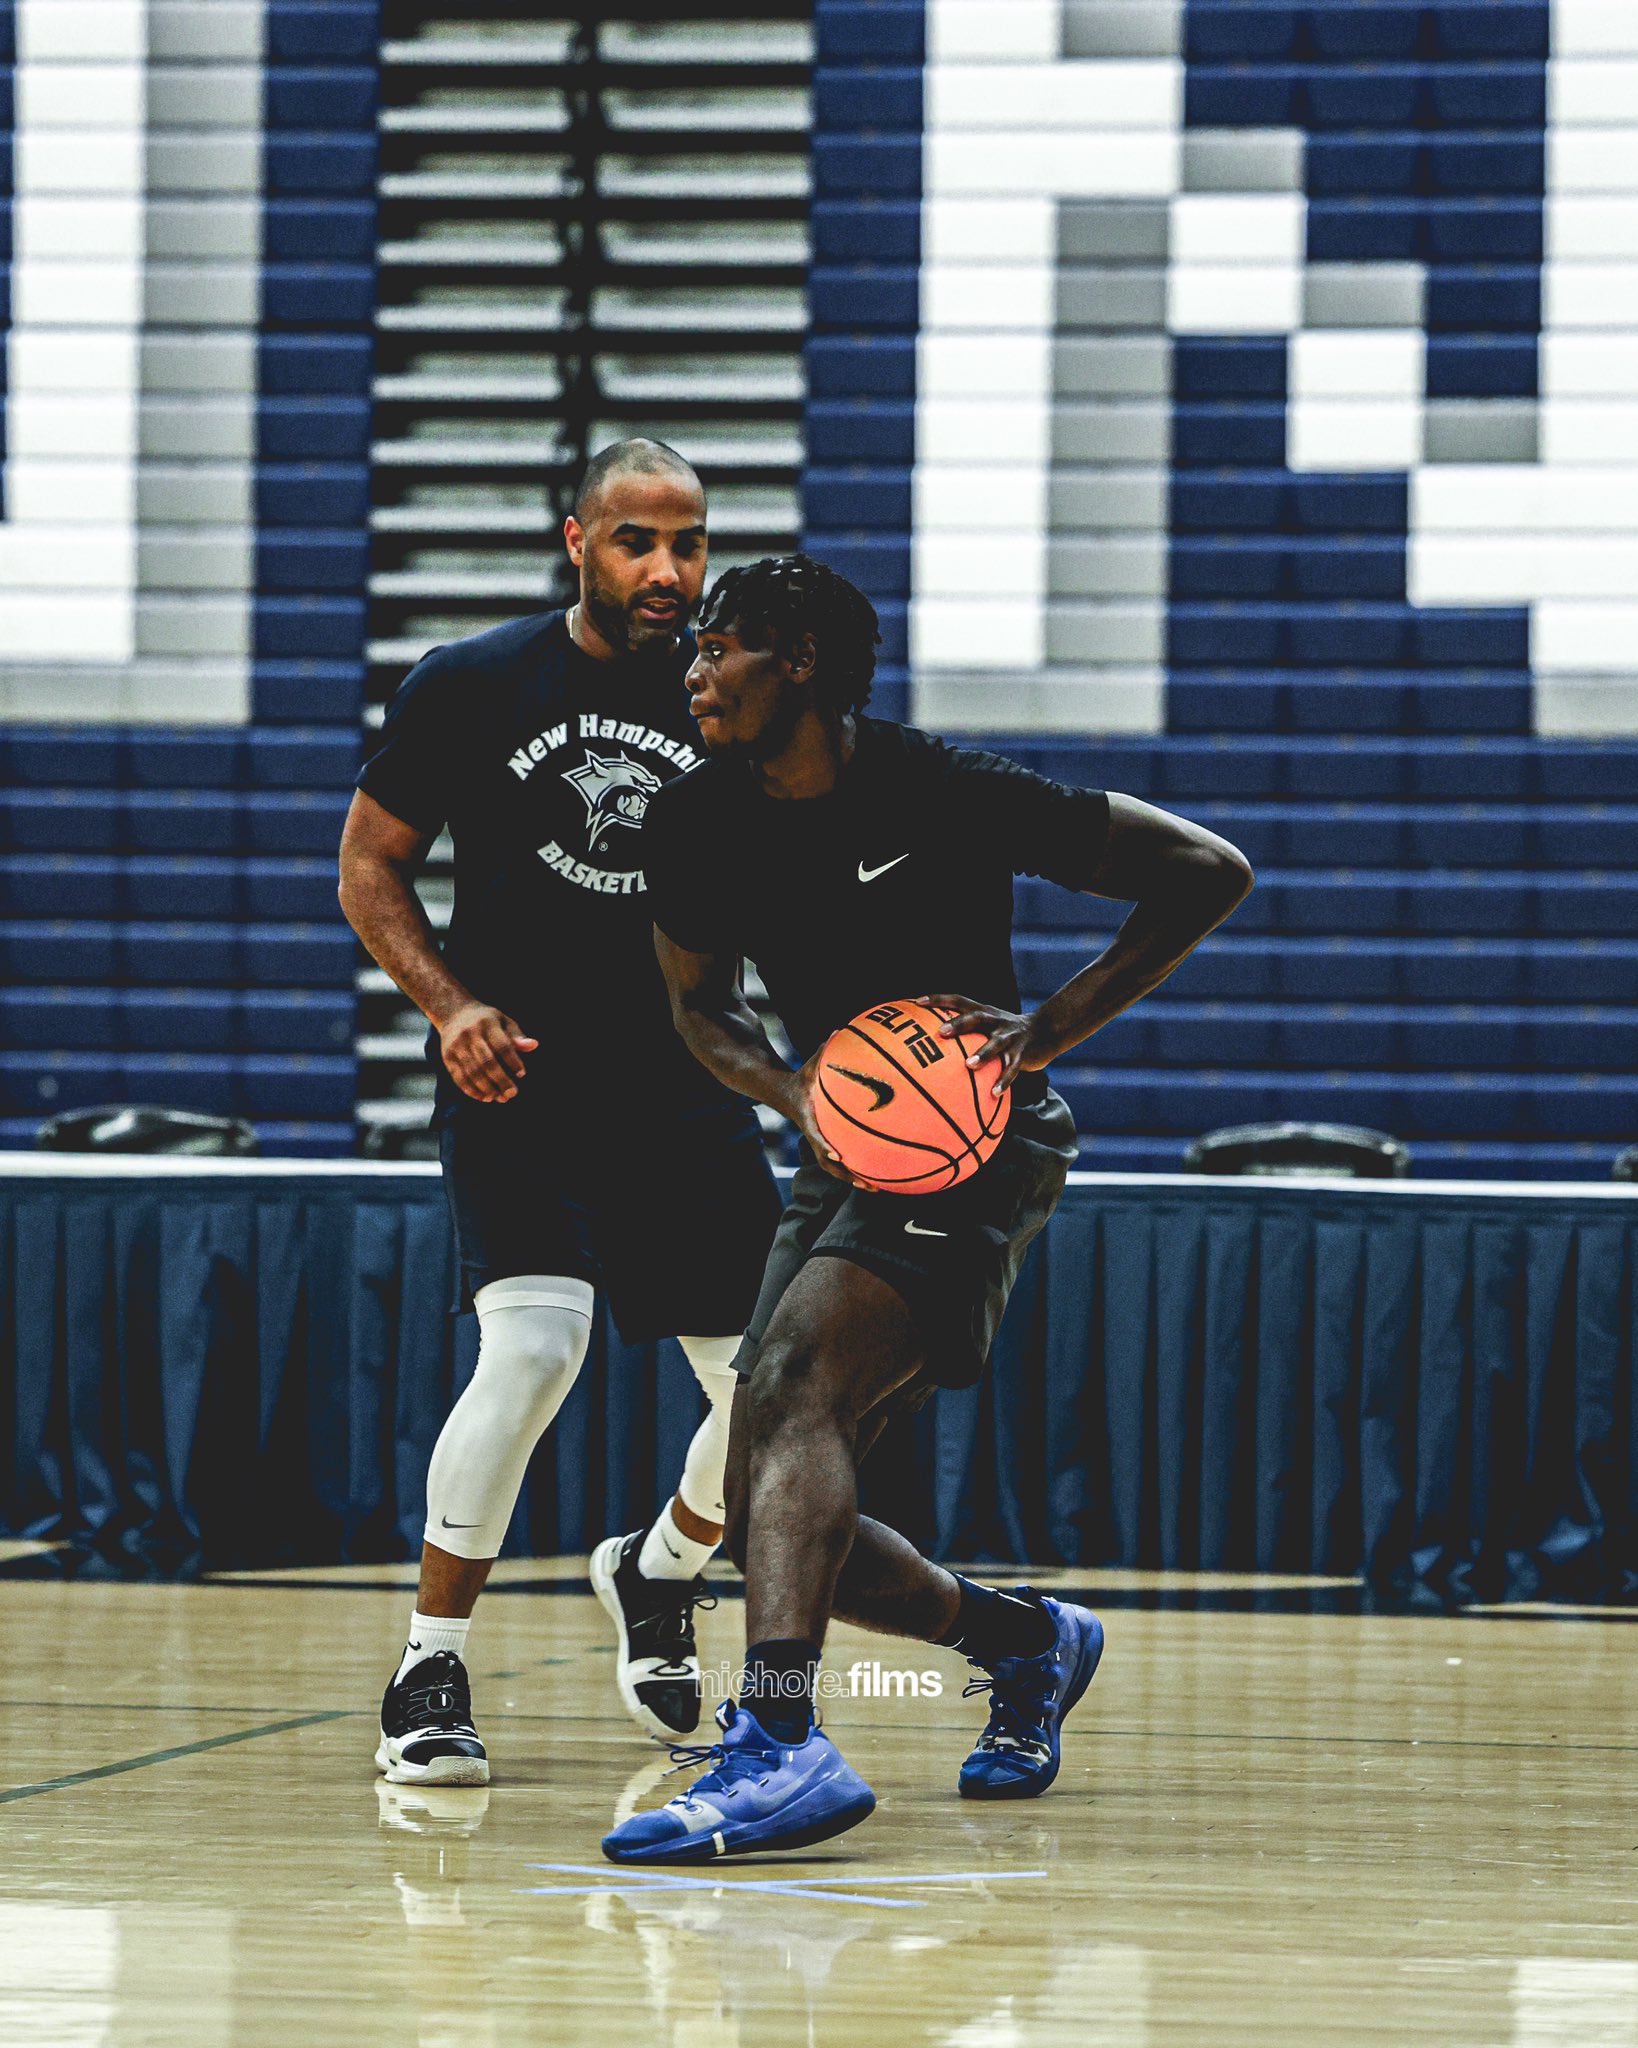 UNH Men's Basketball (@unhmbb) • Instagram photos and videos